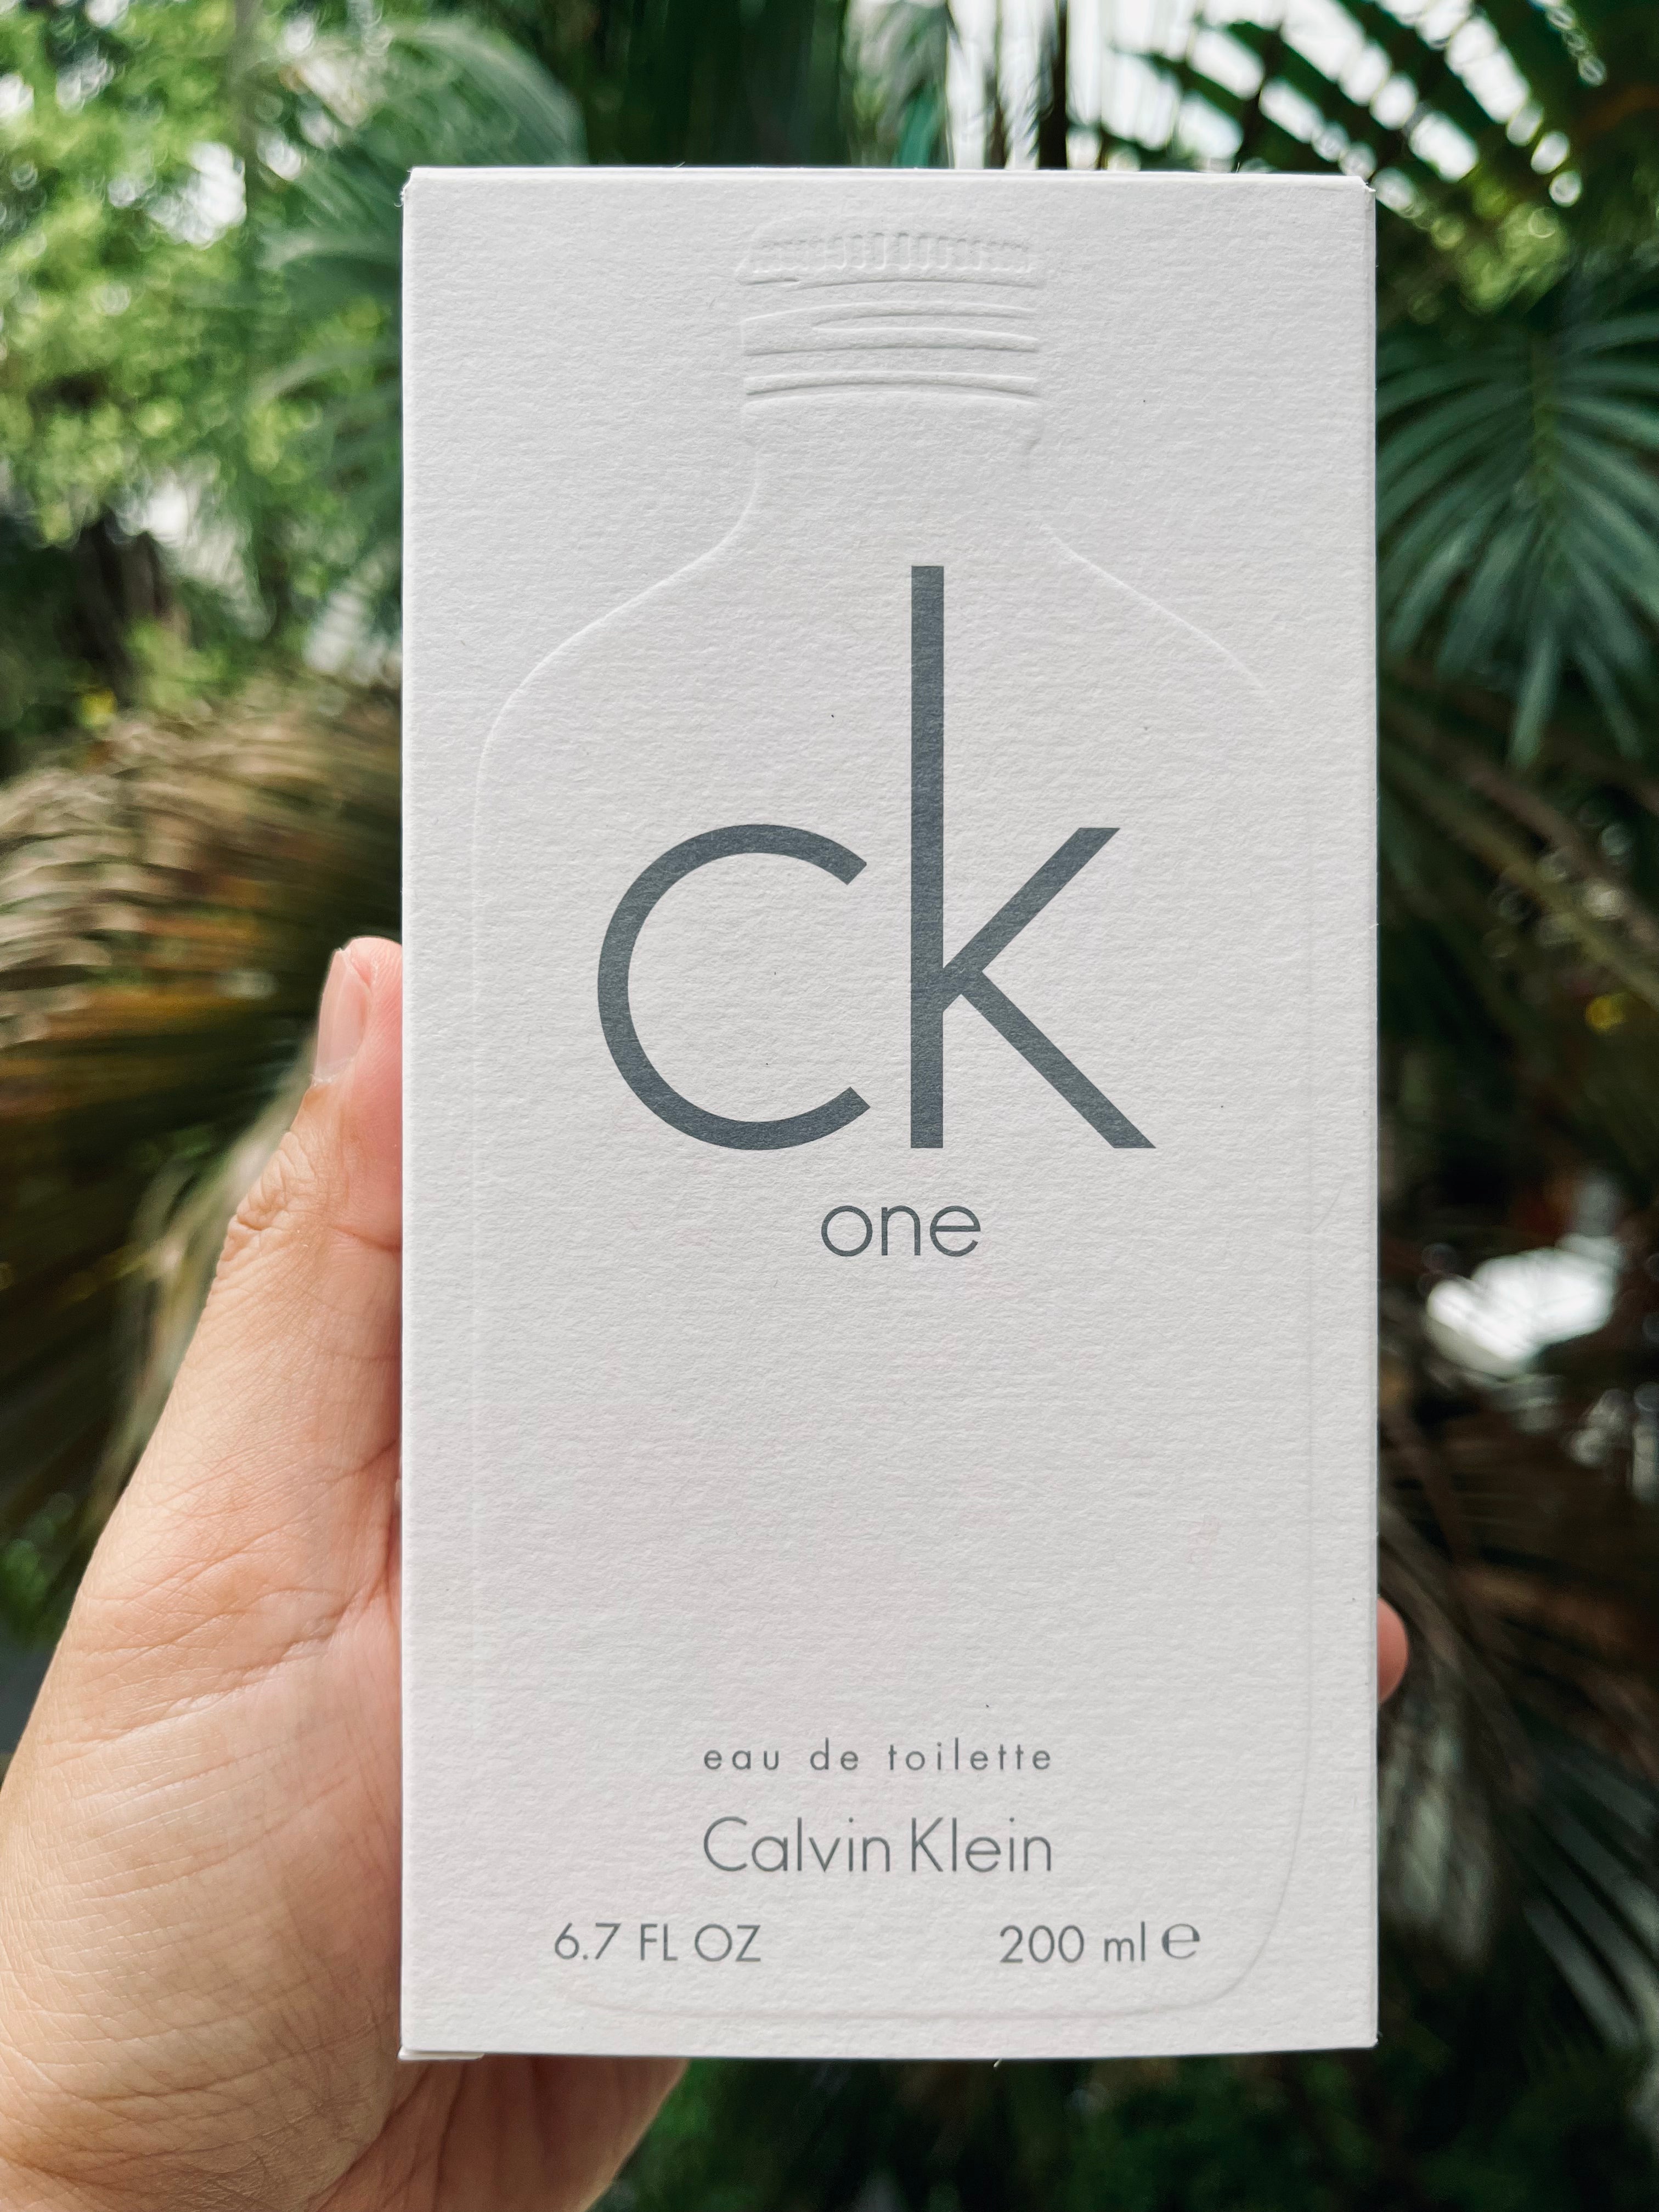 CK ONE perfume EDT price online Calvin Klein - Perfumes Club